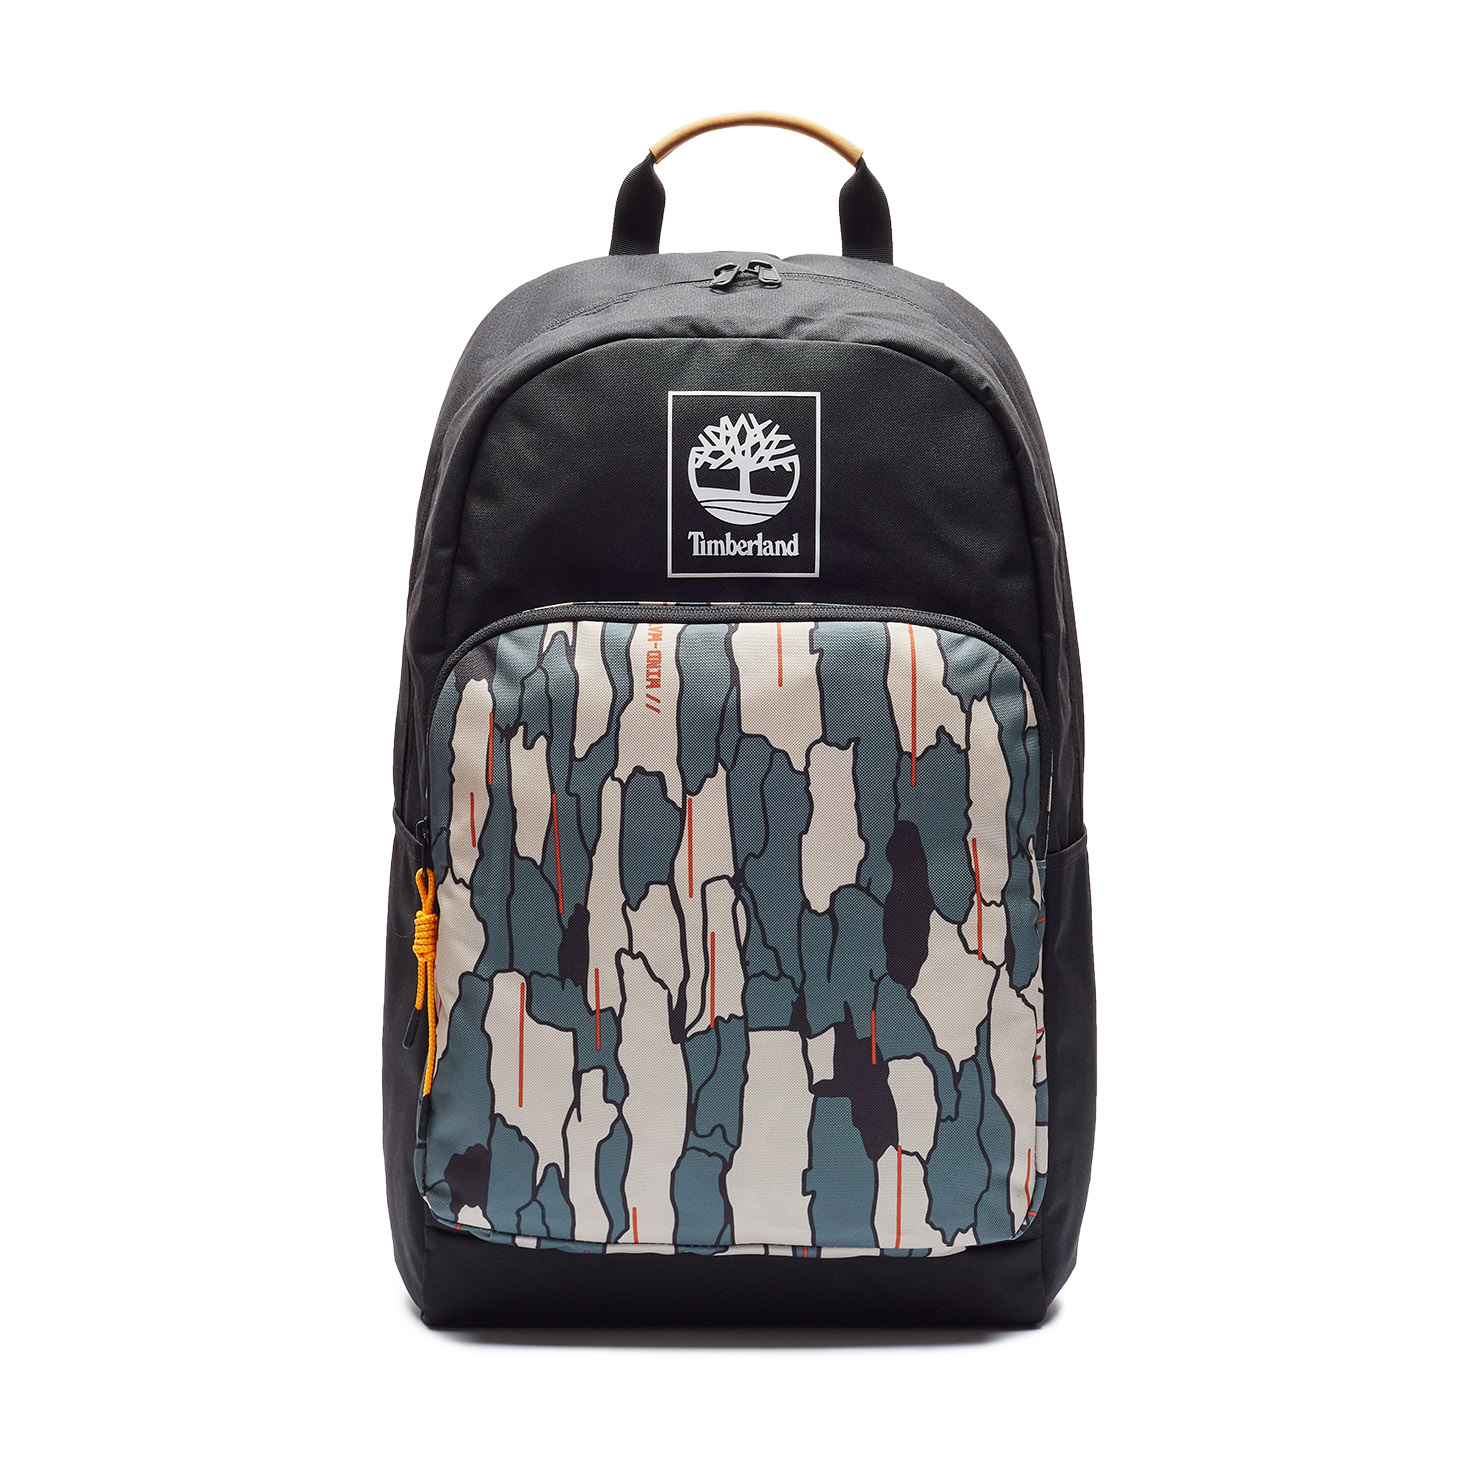 Camo Backpack TIMBERLAND, размер Один размер, цвет черный